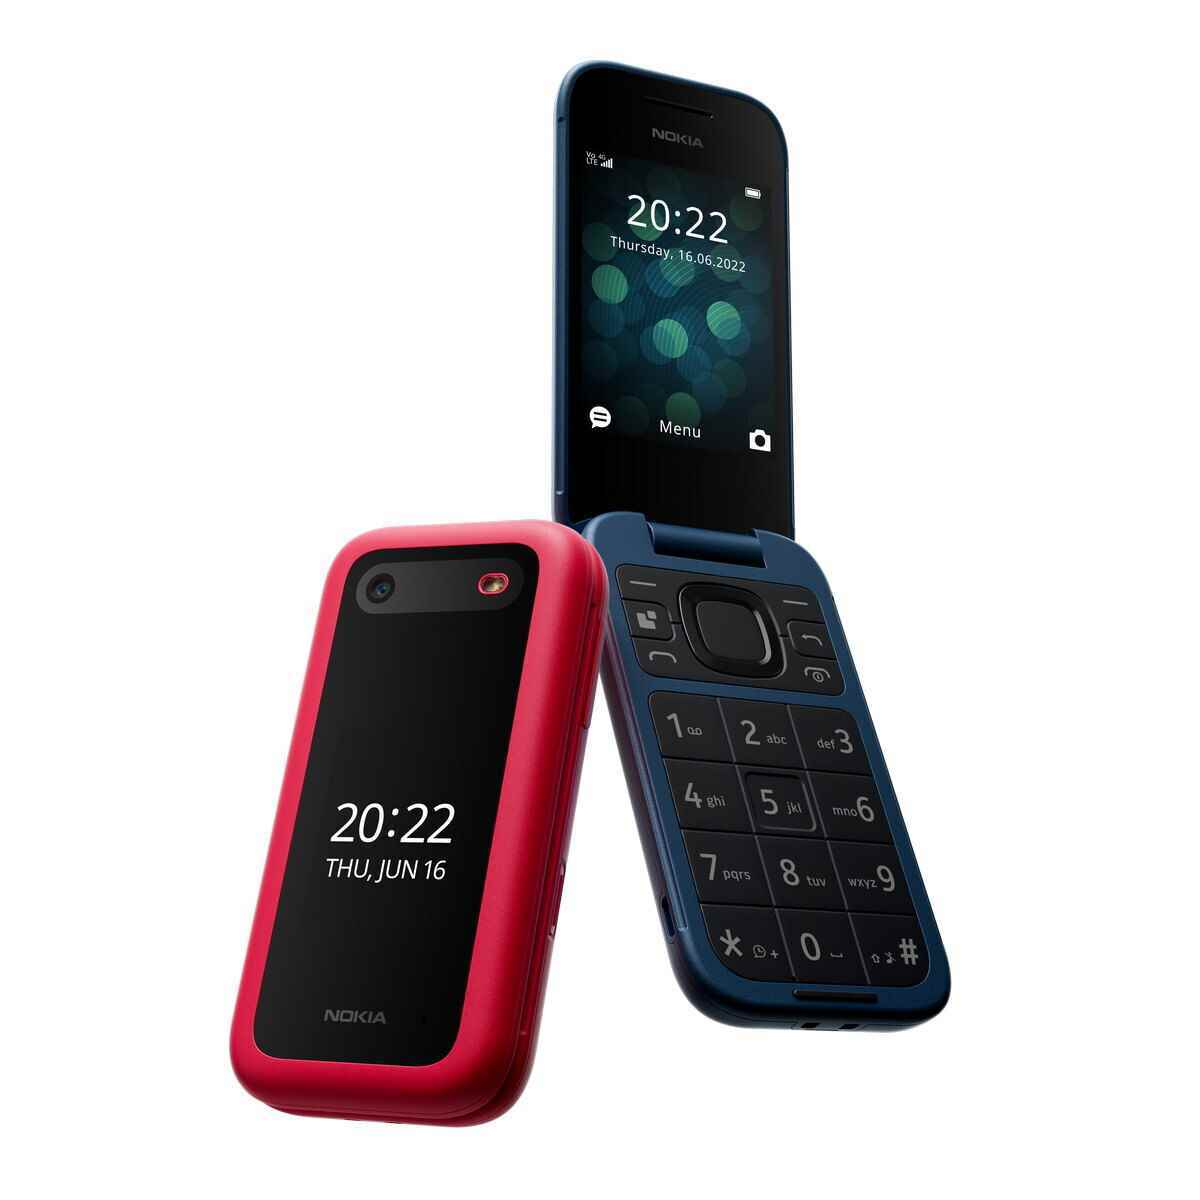 Nokia 2660 - Nokia, retro cazibesini üç özellikli telefon ve Android tablet ile geri getiriyor